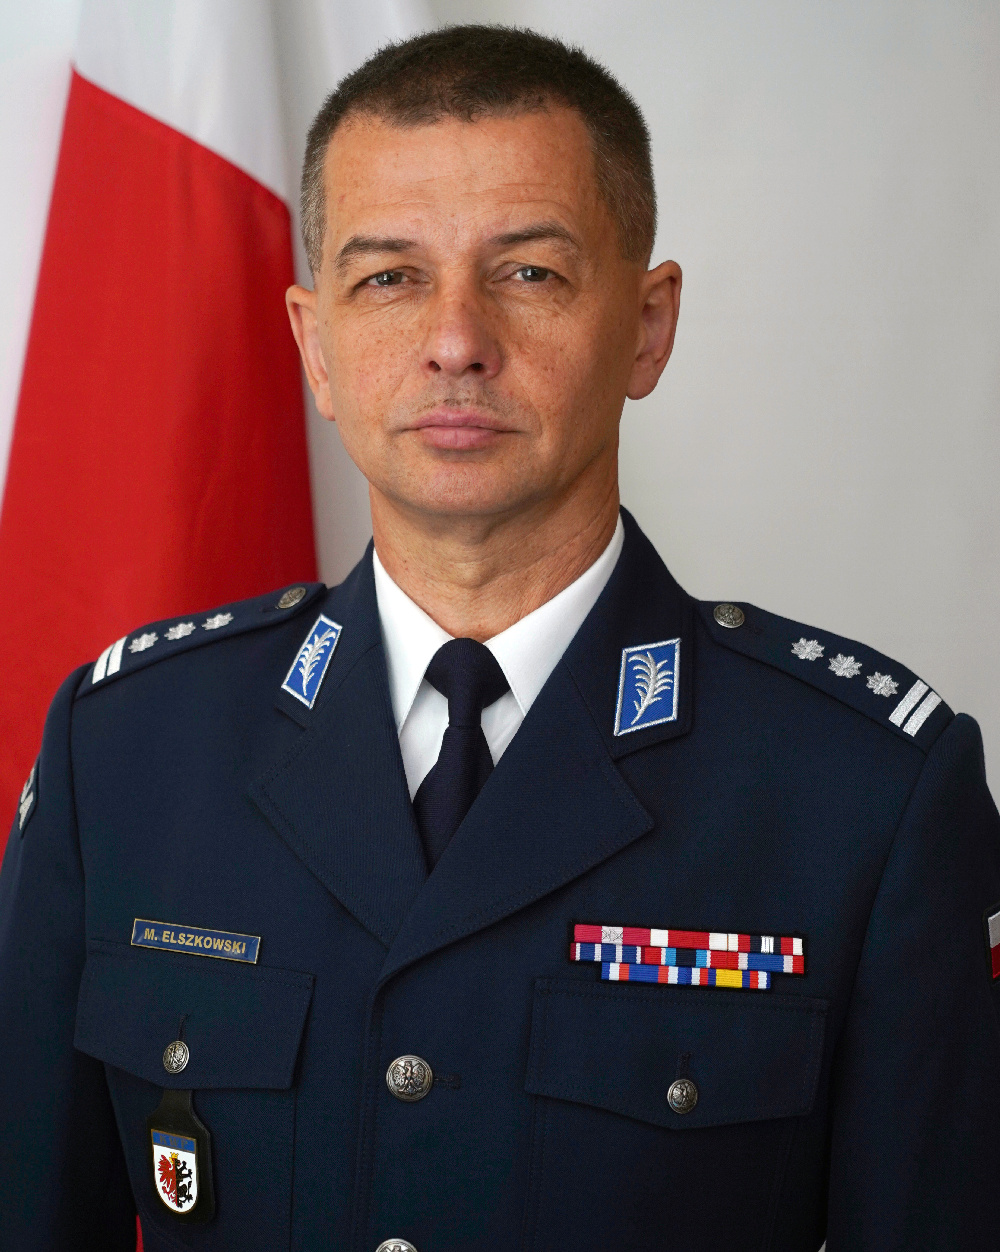 insp. Mirosław Elszkowski